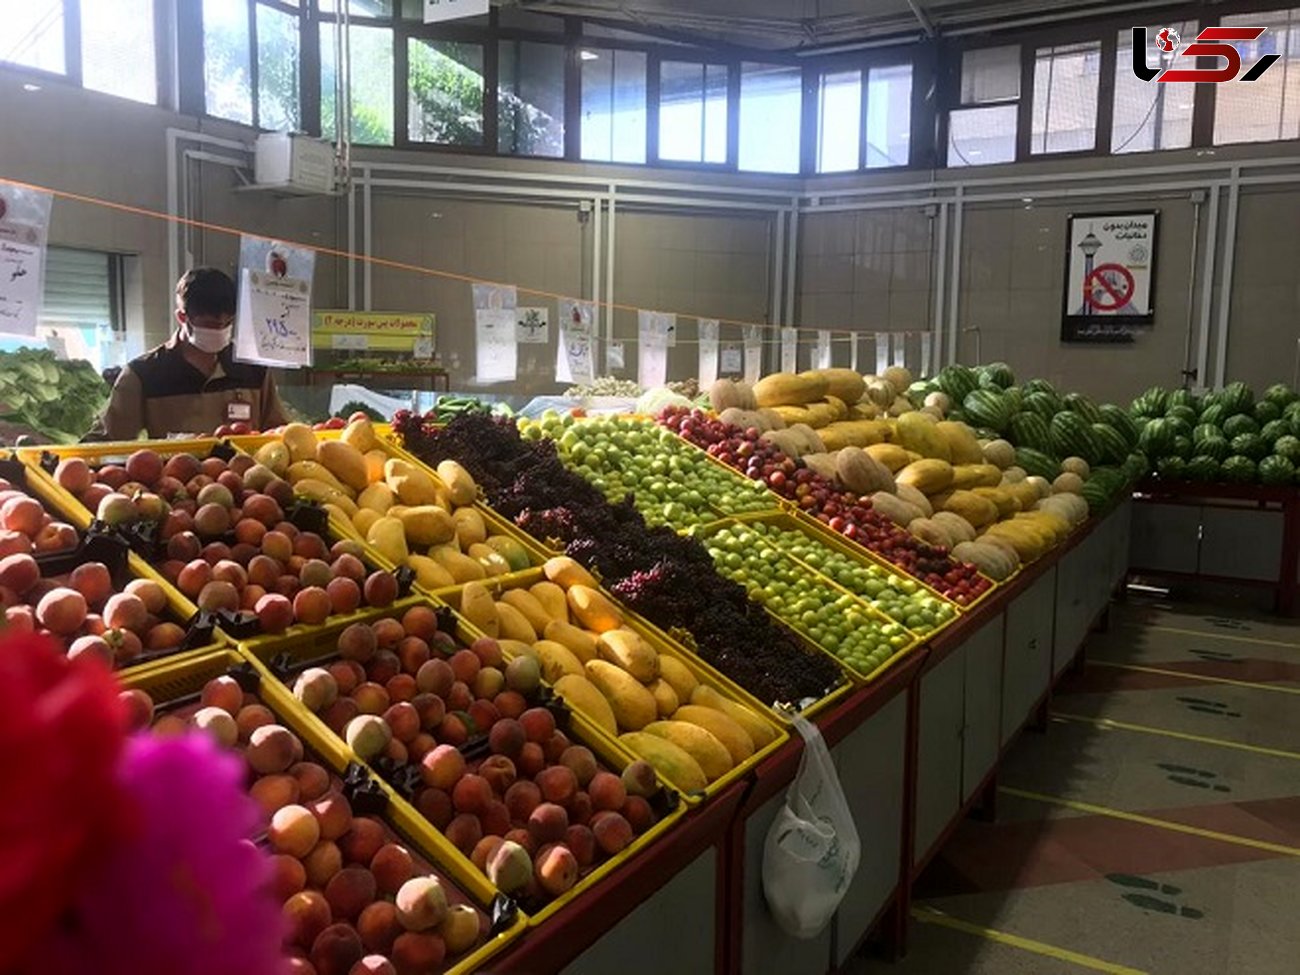 16 کیلوگرم میوه 99 هزار تومان + قیمت روز میوه ها